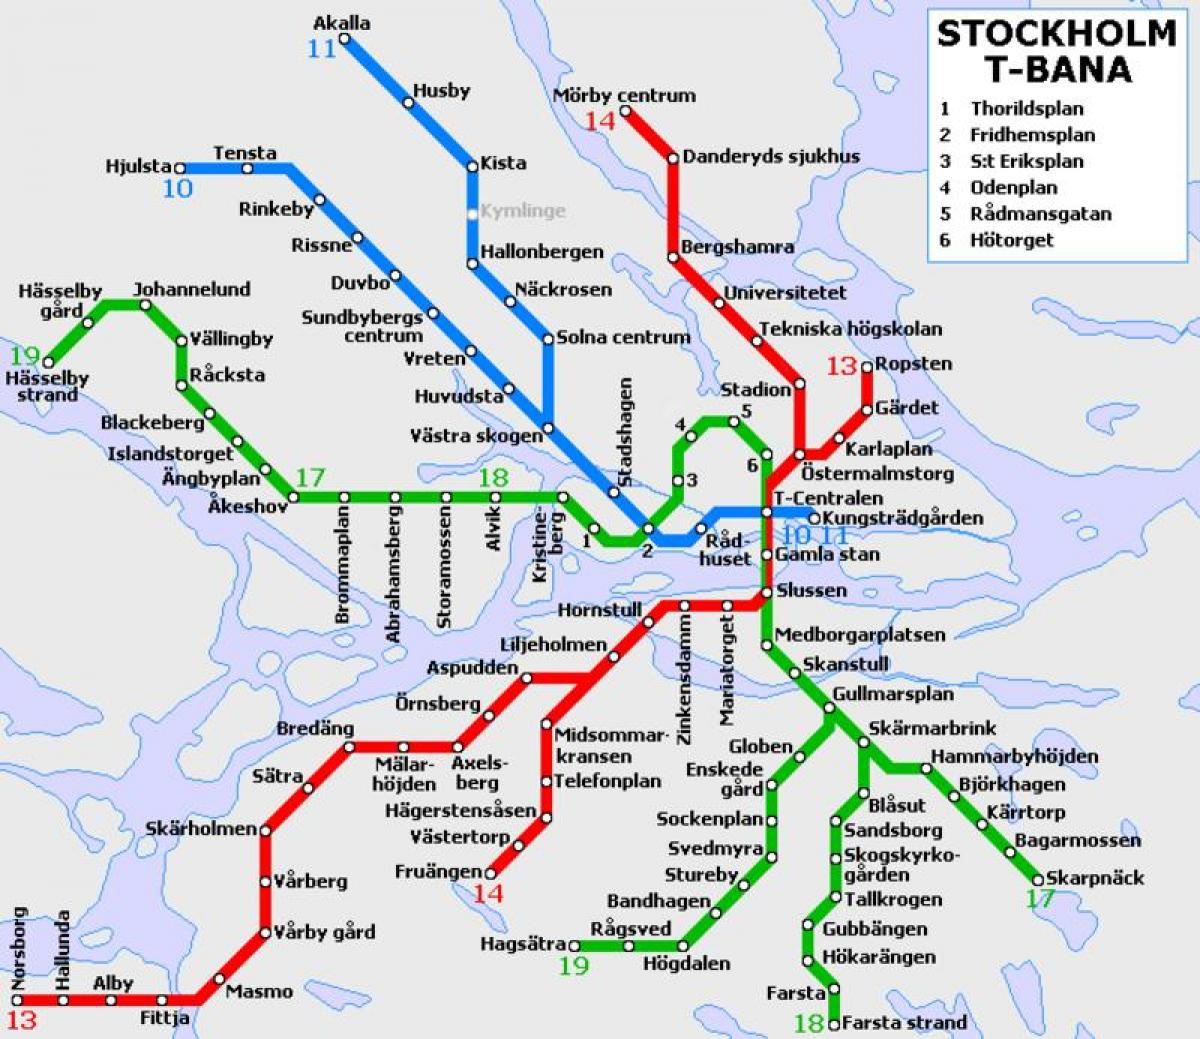 обществен транспорт на Стокхолм картата